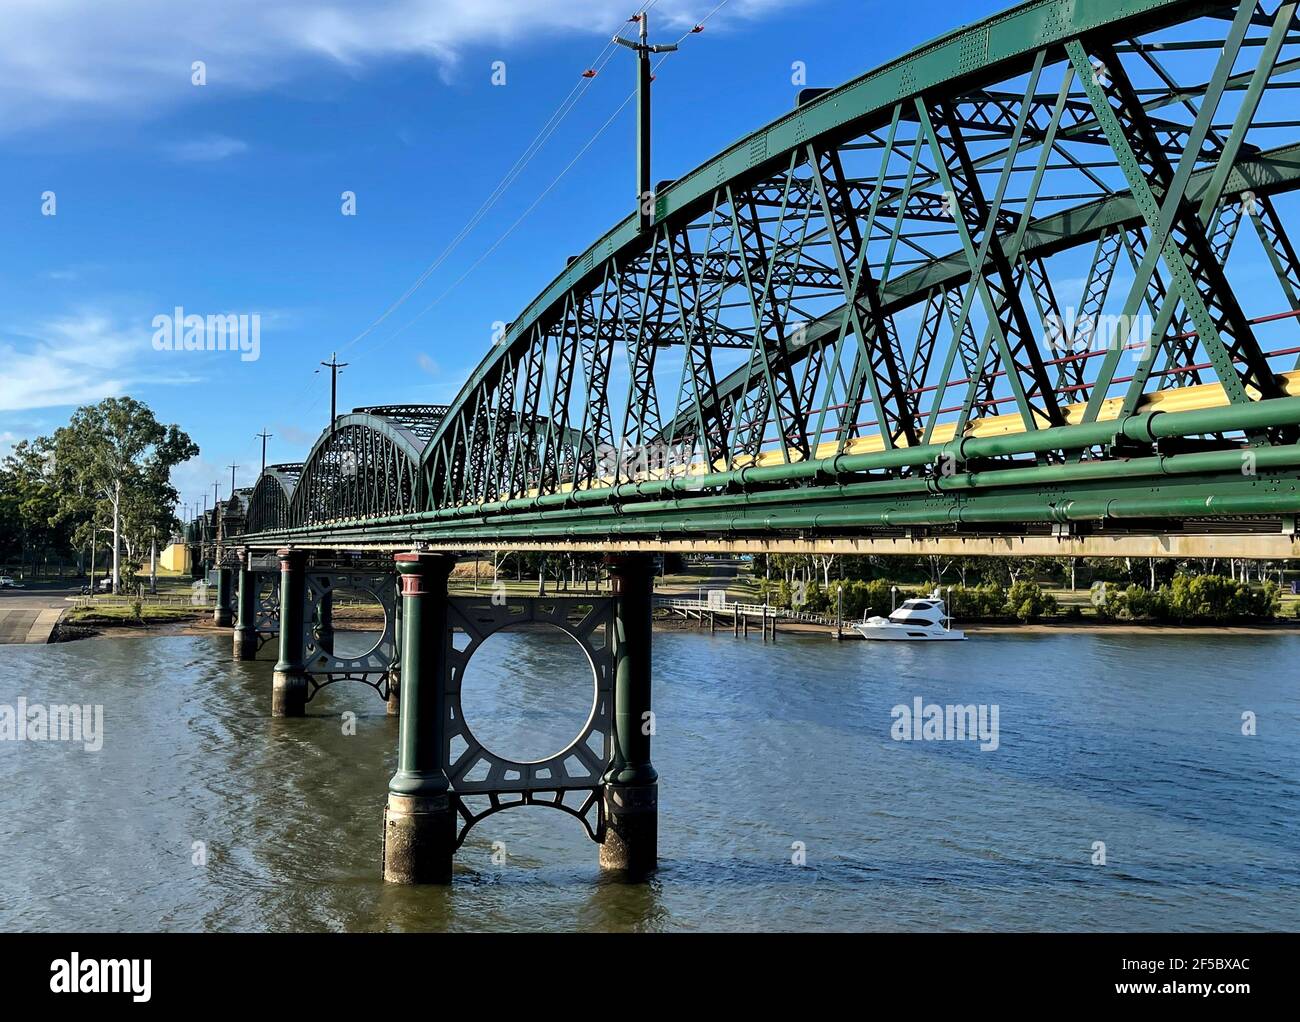 Vue sur le Burnet Bridge, un pont de treillis métallique qui enjambe la rivière Burnett construite en 1900, à Bundaberg, Queensland, Australie Banque D'Images